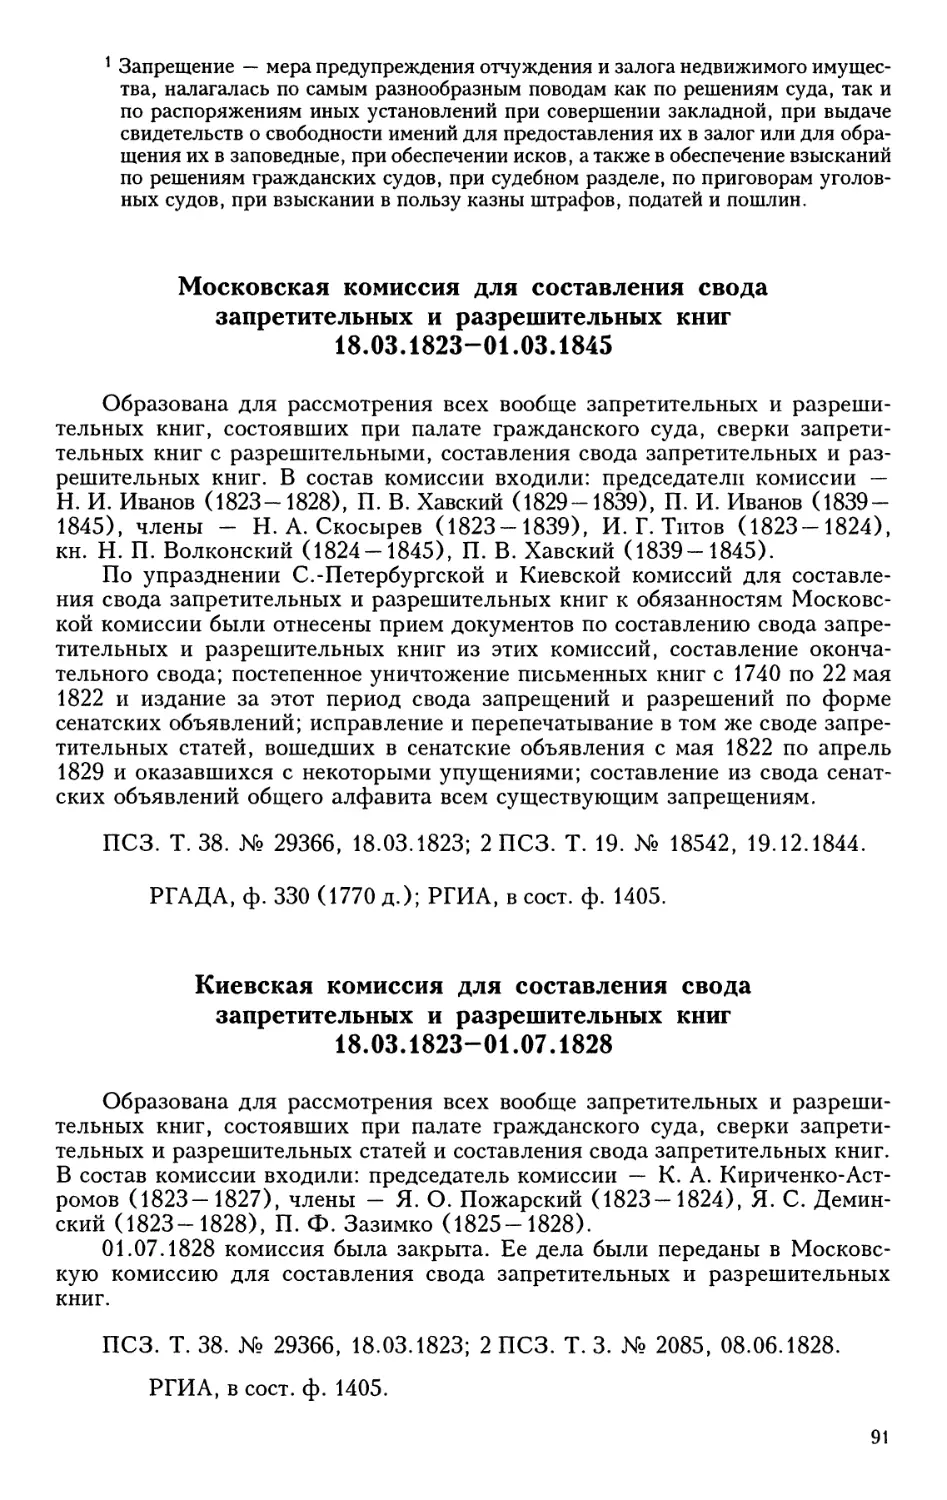 Московская комиссия для составления свода запретительных и  разрешительных книг
Киевская комиссия для составления свода запретительных и  разрешительных книг